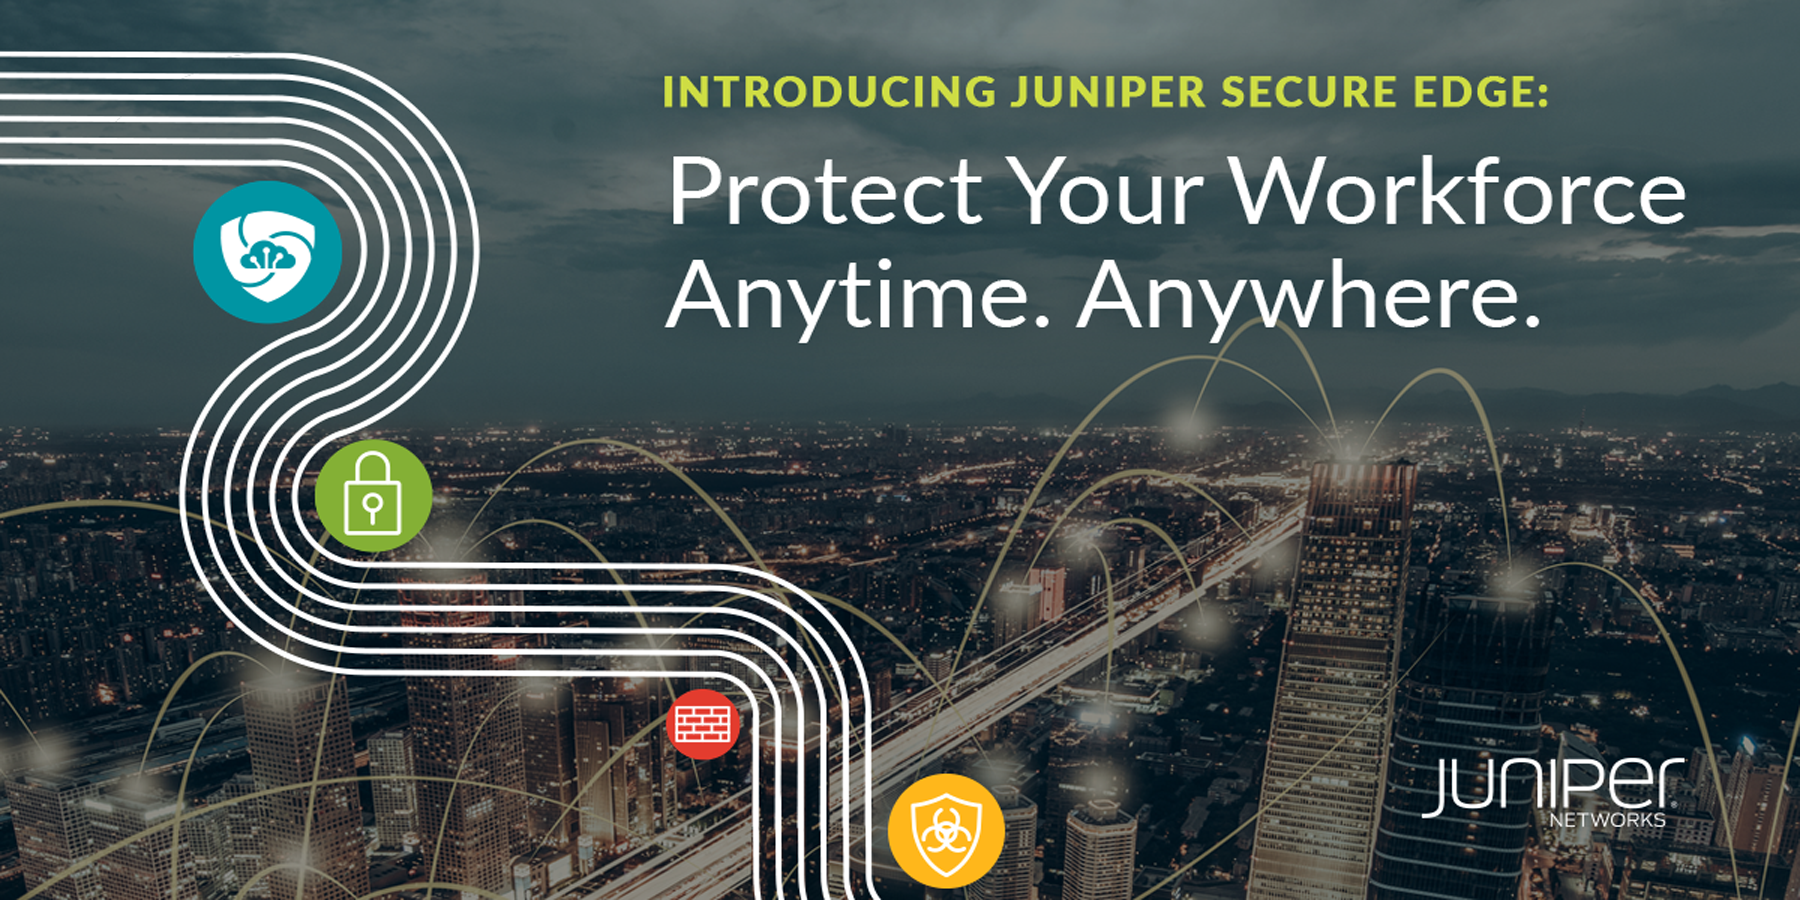 Juniper simplifica la migración de SASE con servicios de firewall en la nube, diseñados específicamente para protección del personal, en cualquier momento y lugar